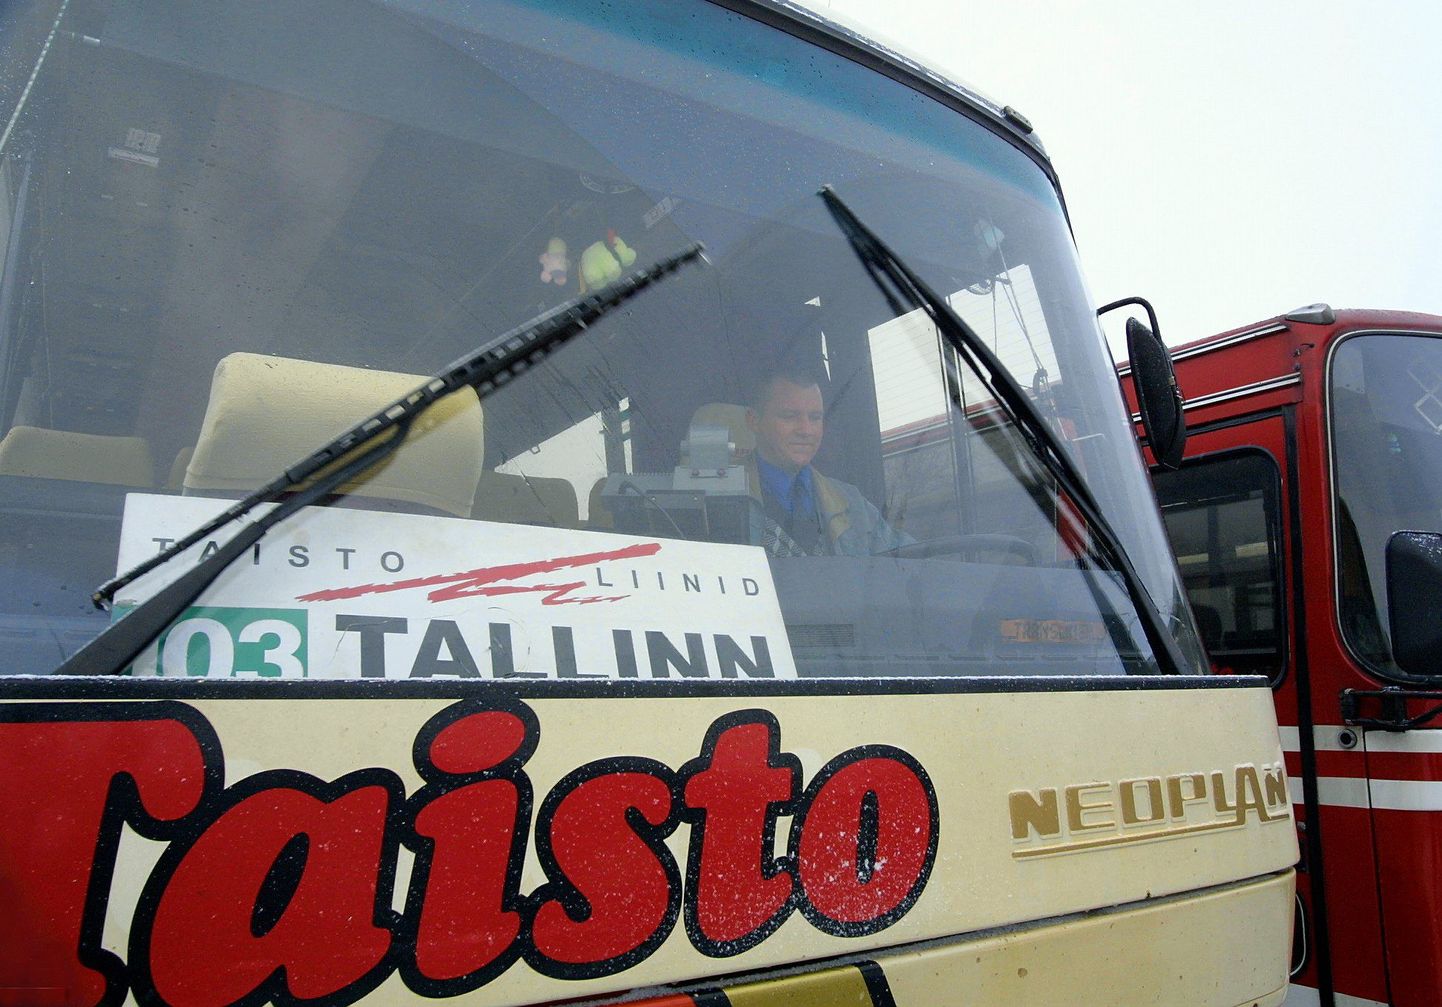 Bussifirma Taisto Liinid pani Viljandi ja Tallinna vahel sõitma kiirbussi